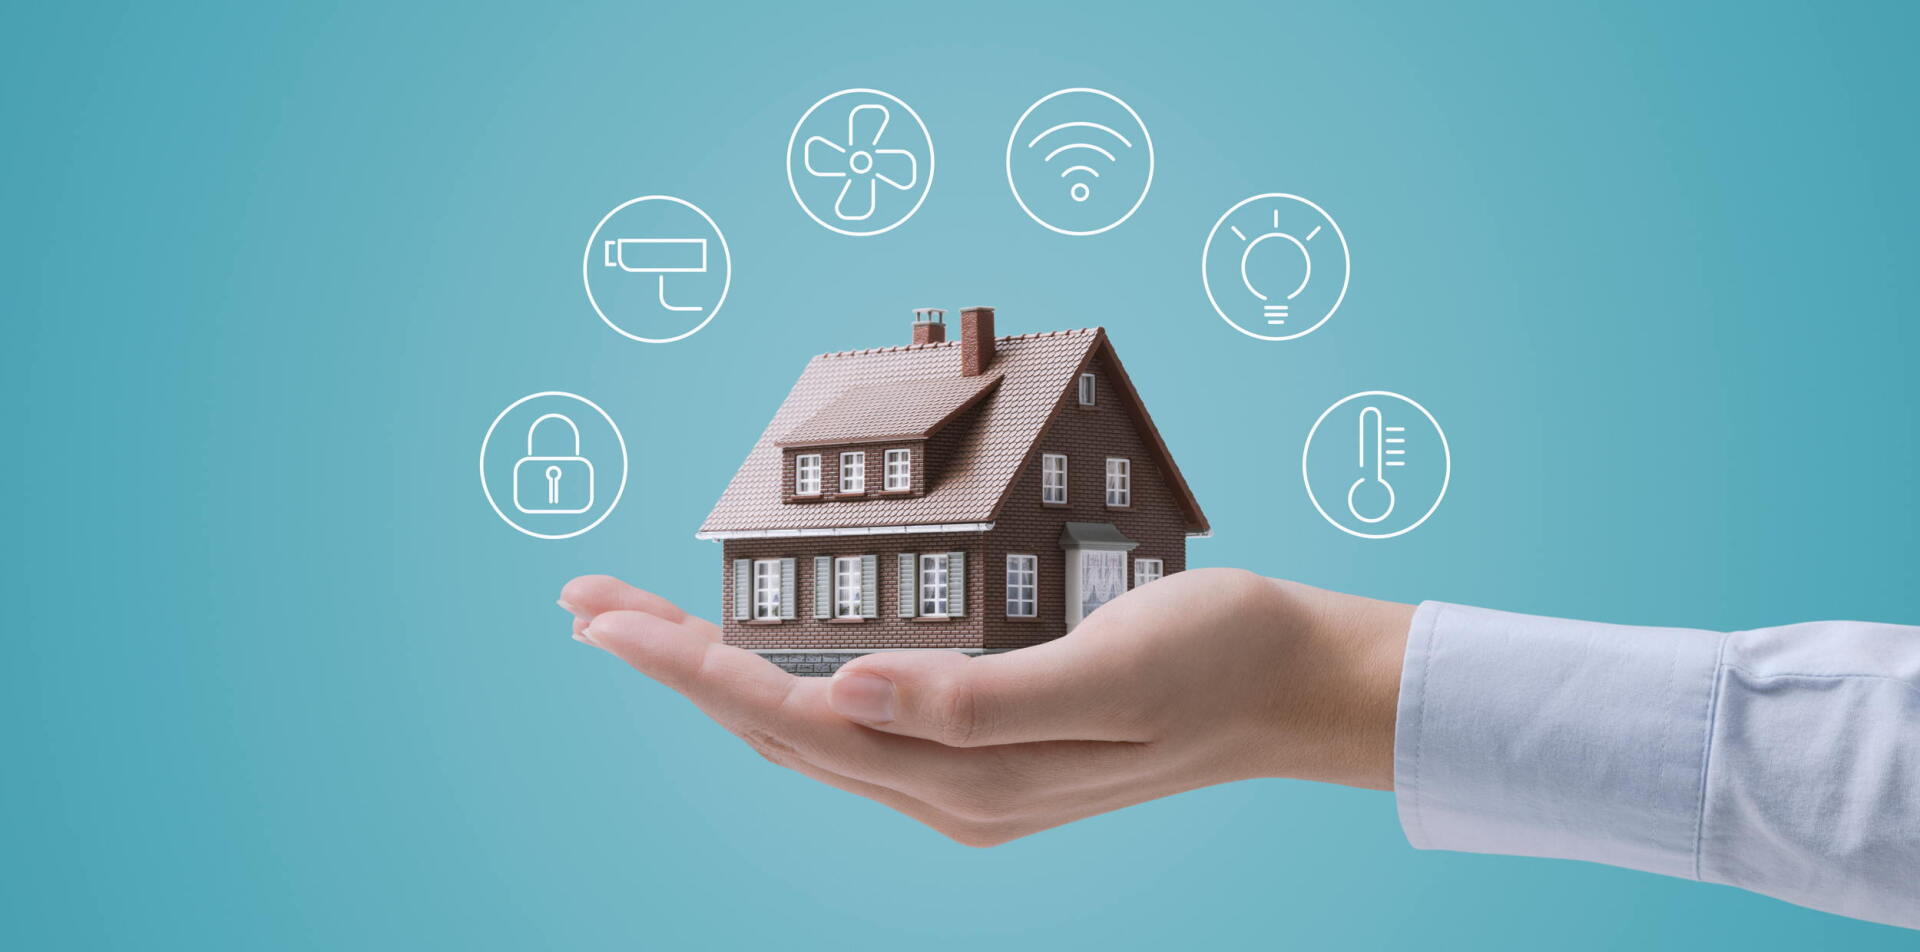 Smart Home kombiniert Einbruchschutz mit weiteren praktischen Alltagshelfern.